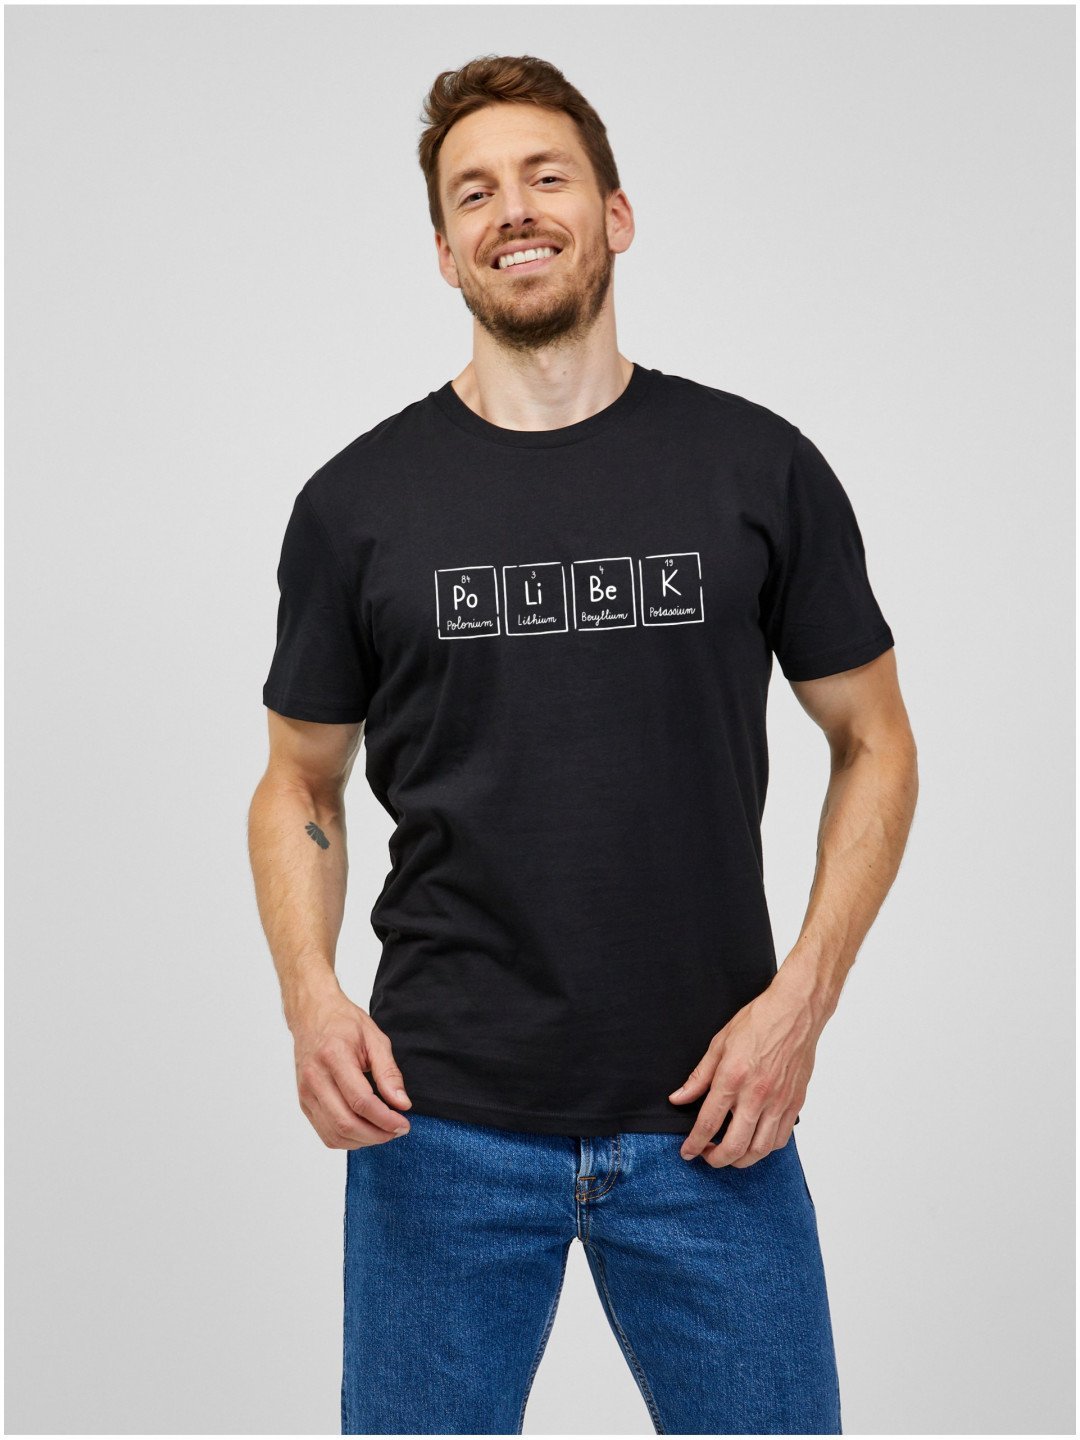 Černé pánské tričko s potiskem ZOOT Original Polibek